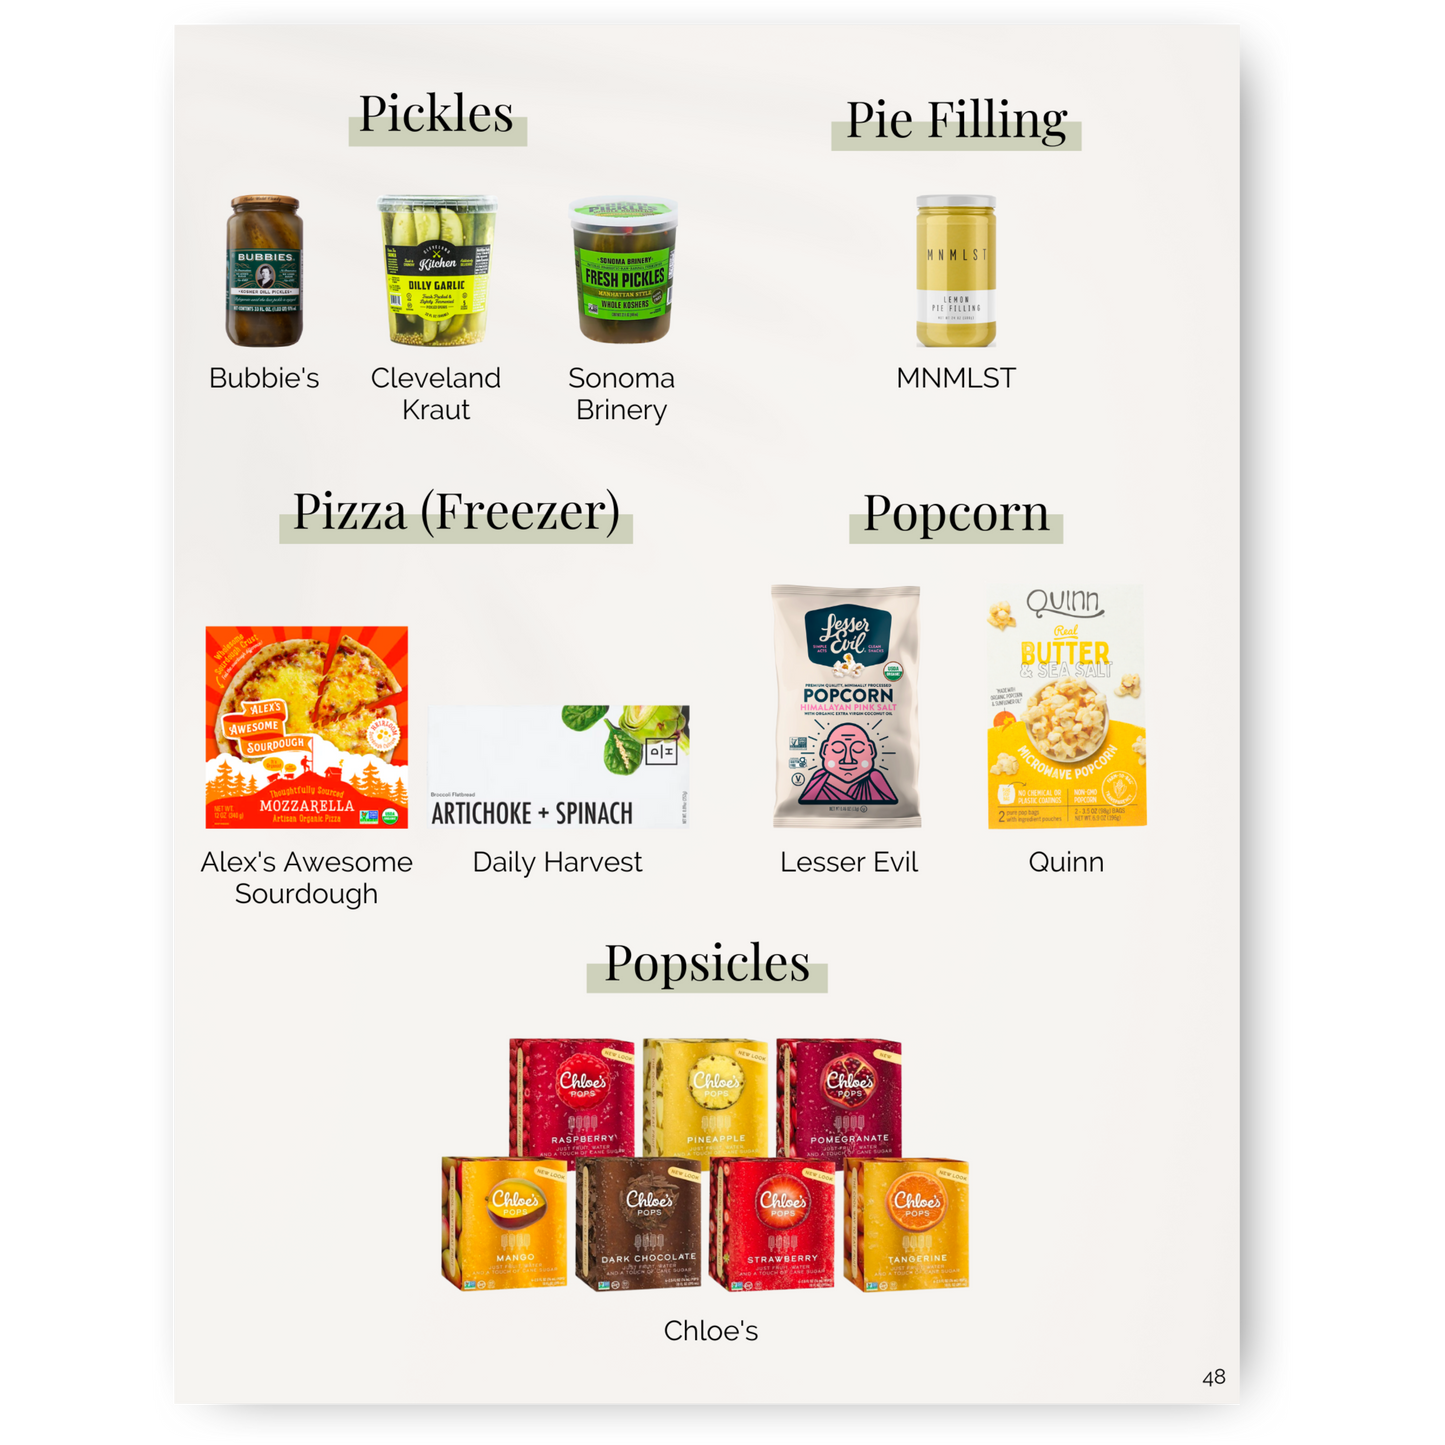 Clean Food + Beverage Brand eBook